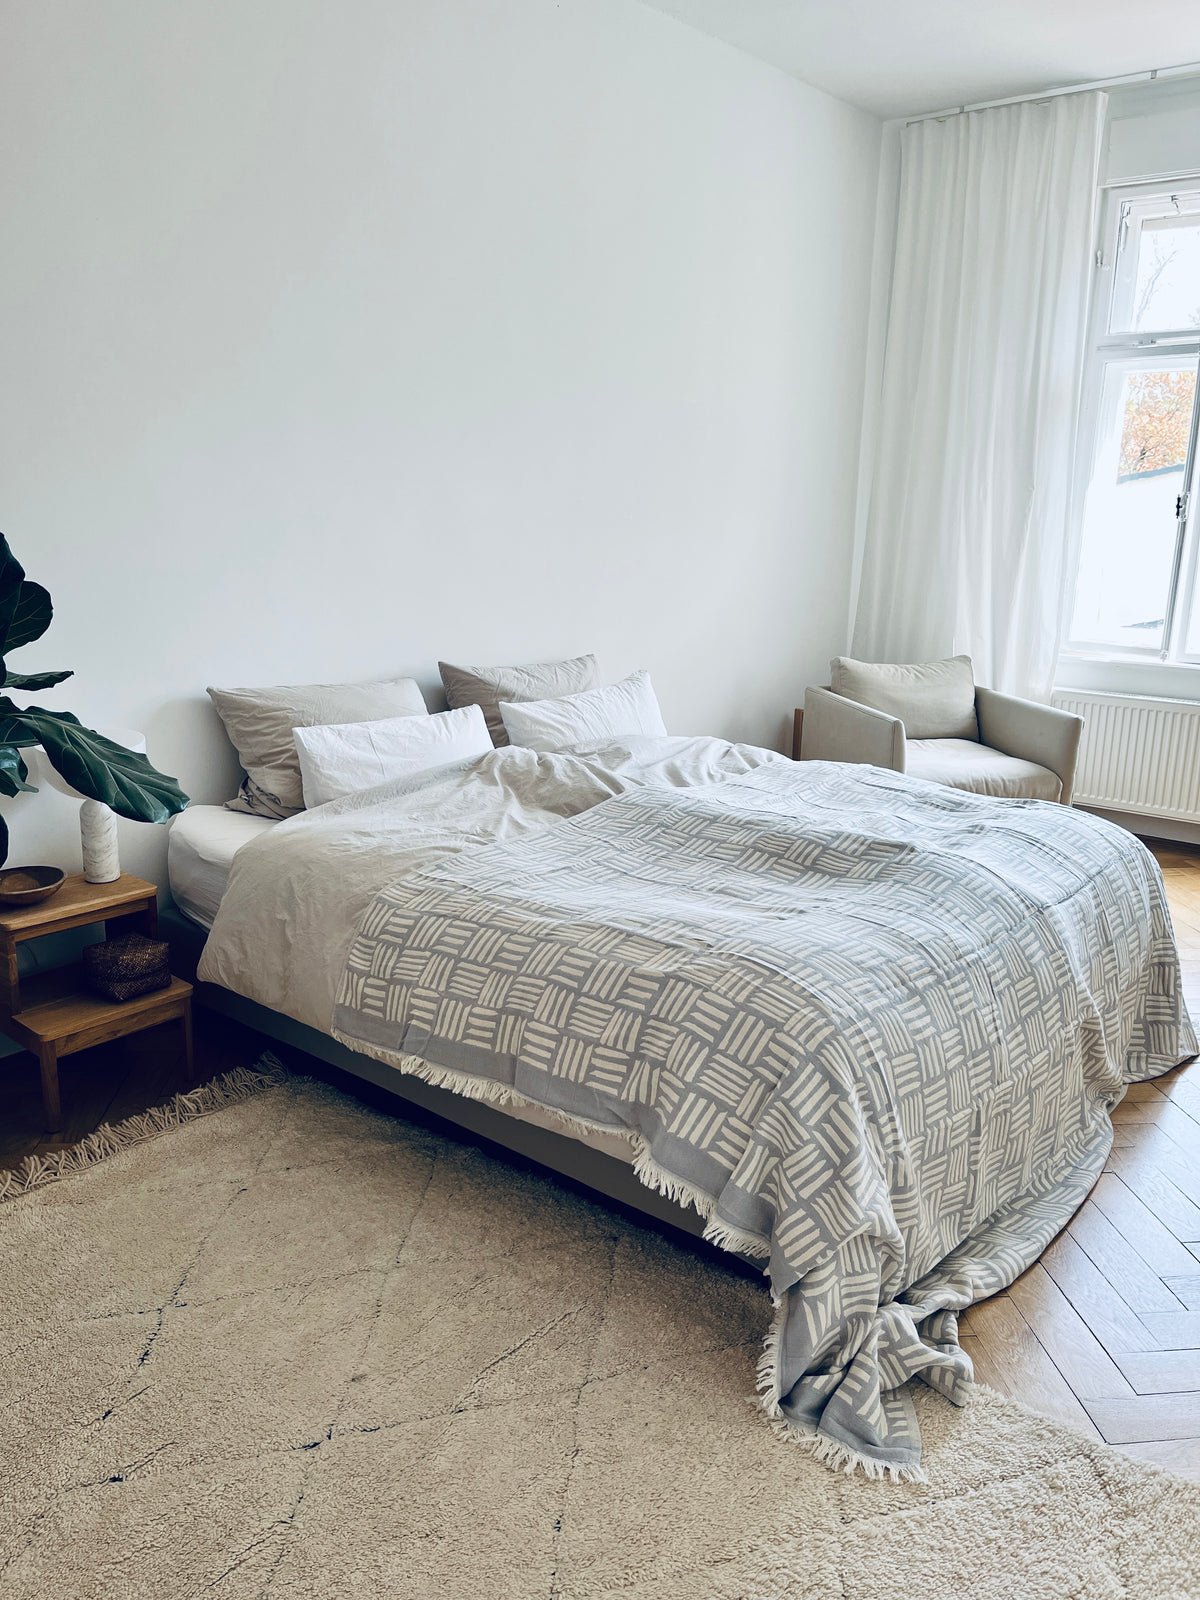 Bettüberwurf aus Baumwolle, geeignet für ein Doppelbett. Auch ideal als leichte Decke auf dem Sofa